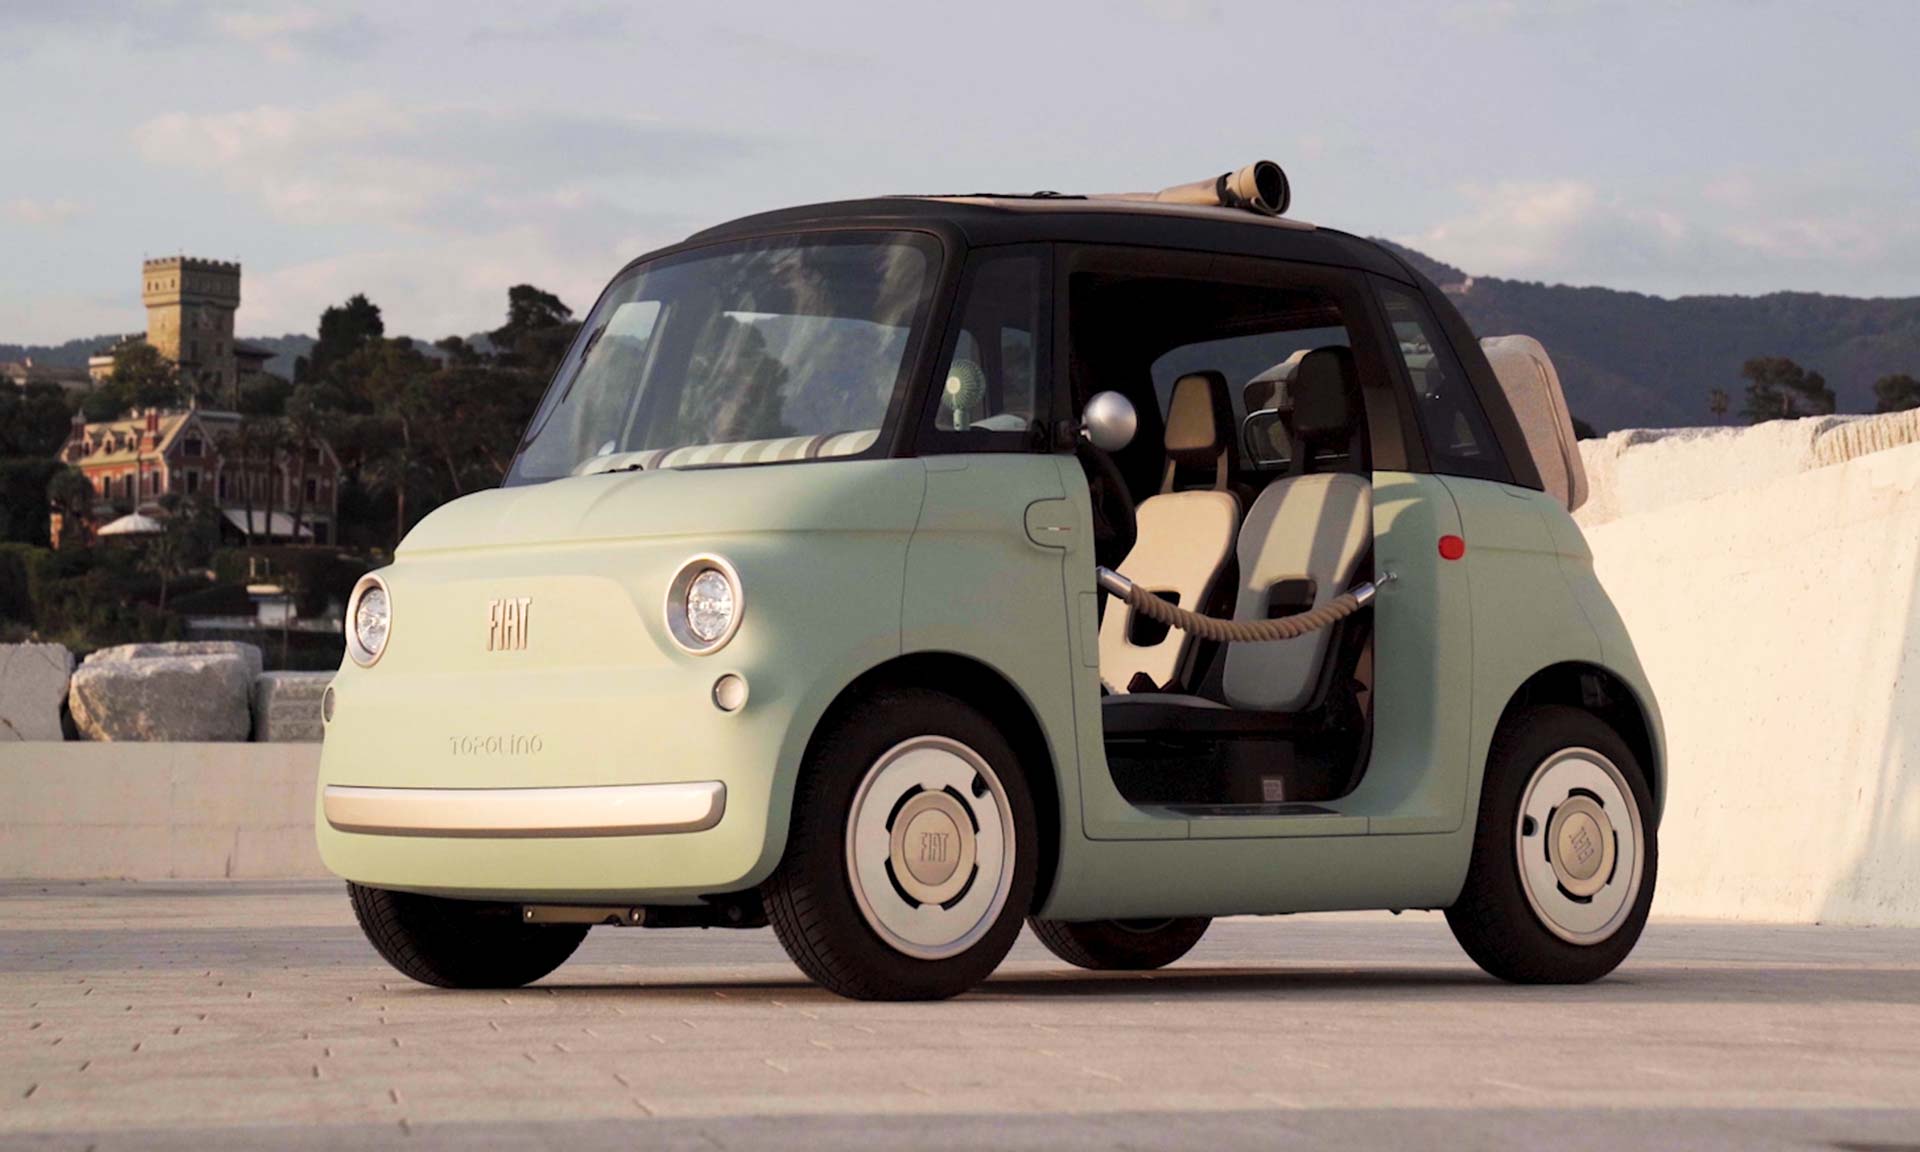 Fiat ha voluto far rivivere l’iconico piccolo modello Topolino e proporre un concetto audace: DesignMag.cz